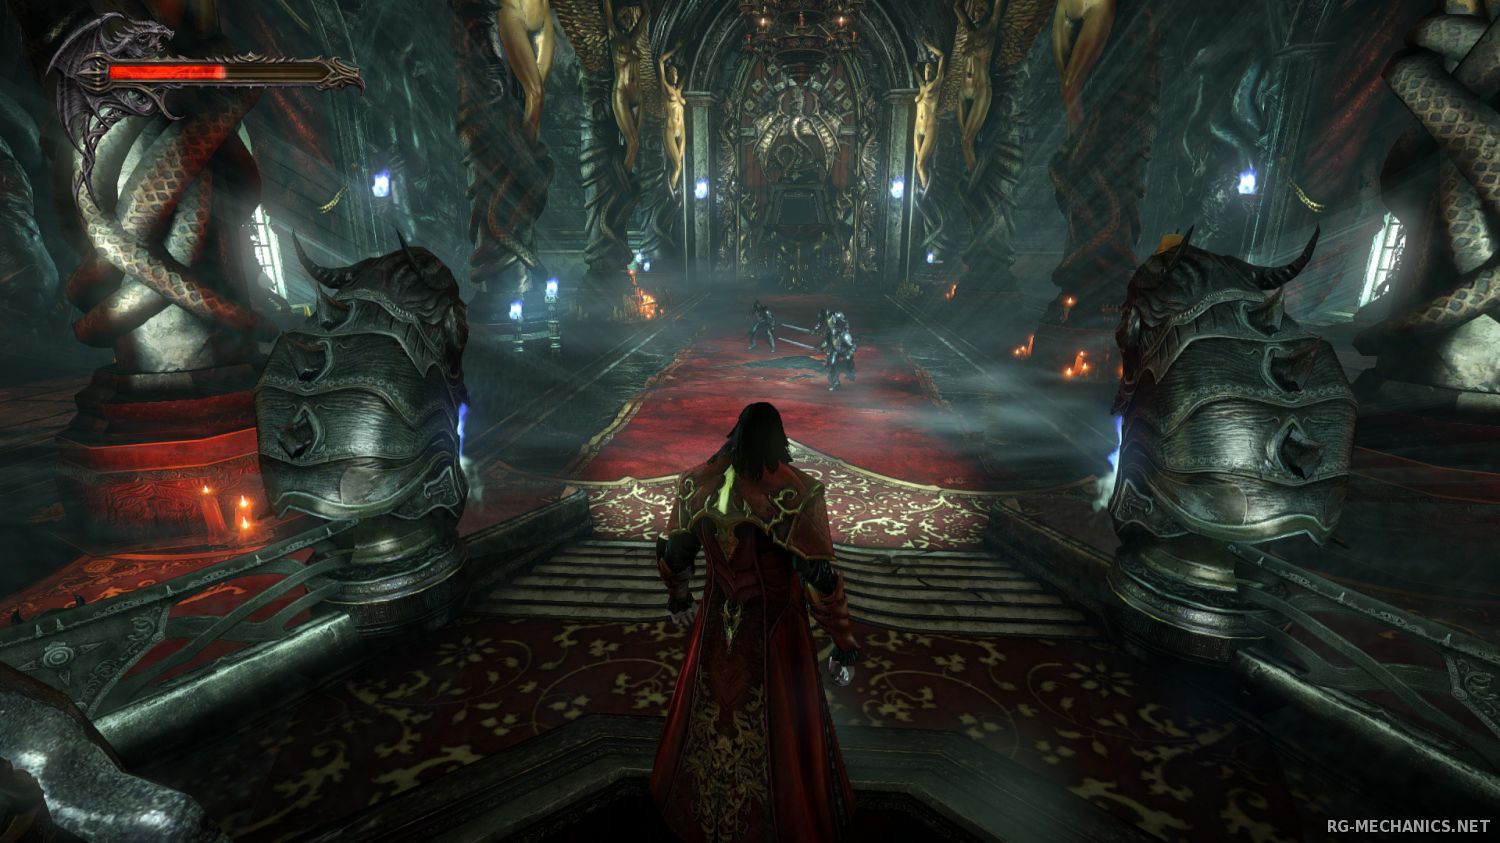 Скриншот 2 к игре Castlevania - Lords of Shadow 2 [v 1.0.0.1u1 + DLC] (2014) скачать торрент RePack